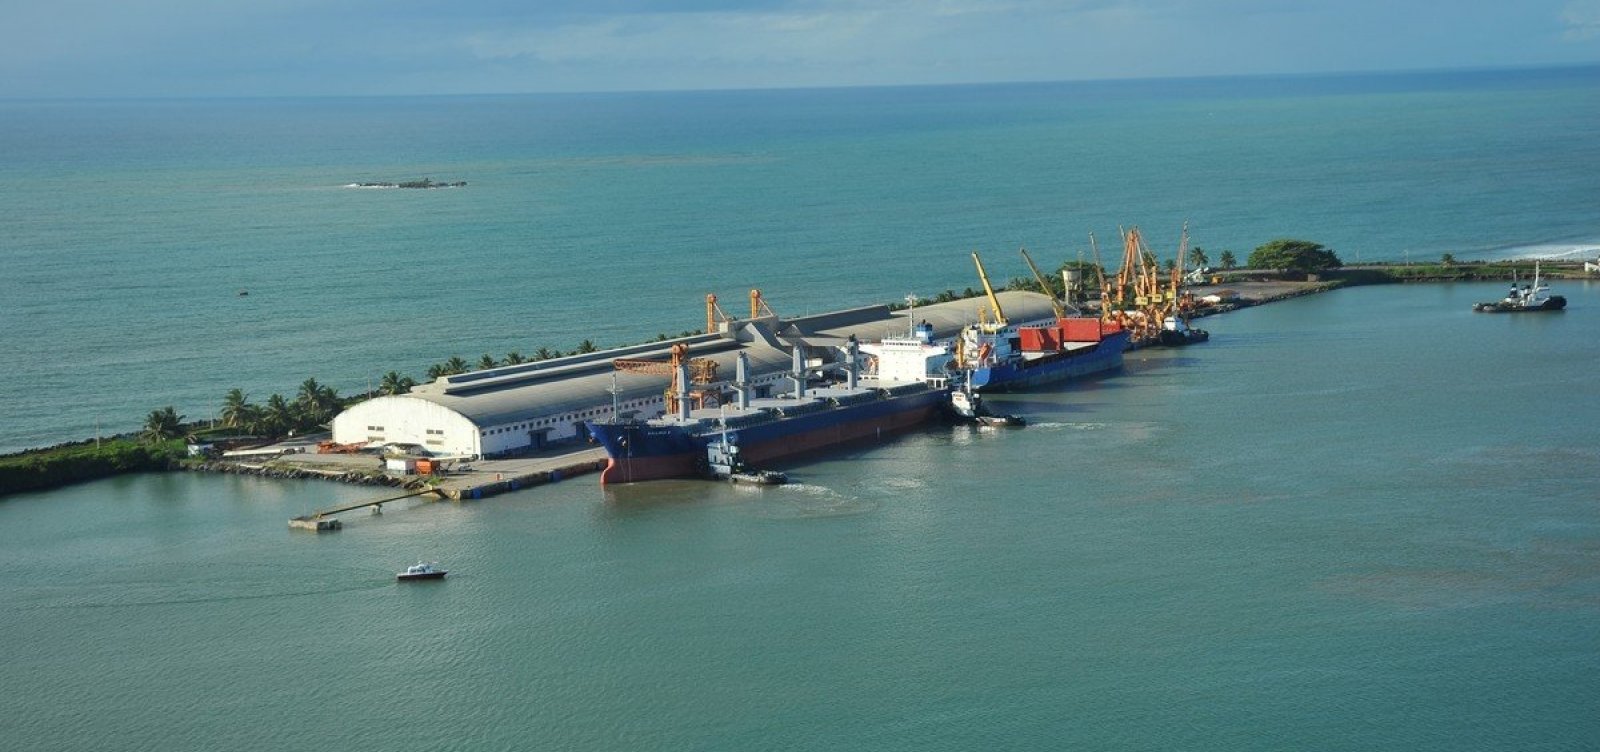 Barco pesqueiro com cinco tripulantes no sul da Bahia segue sem ser localizado